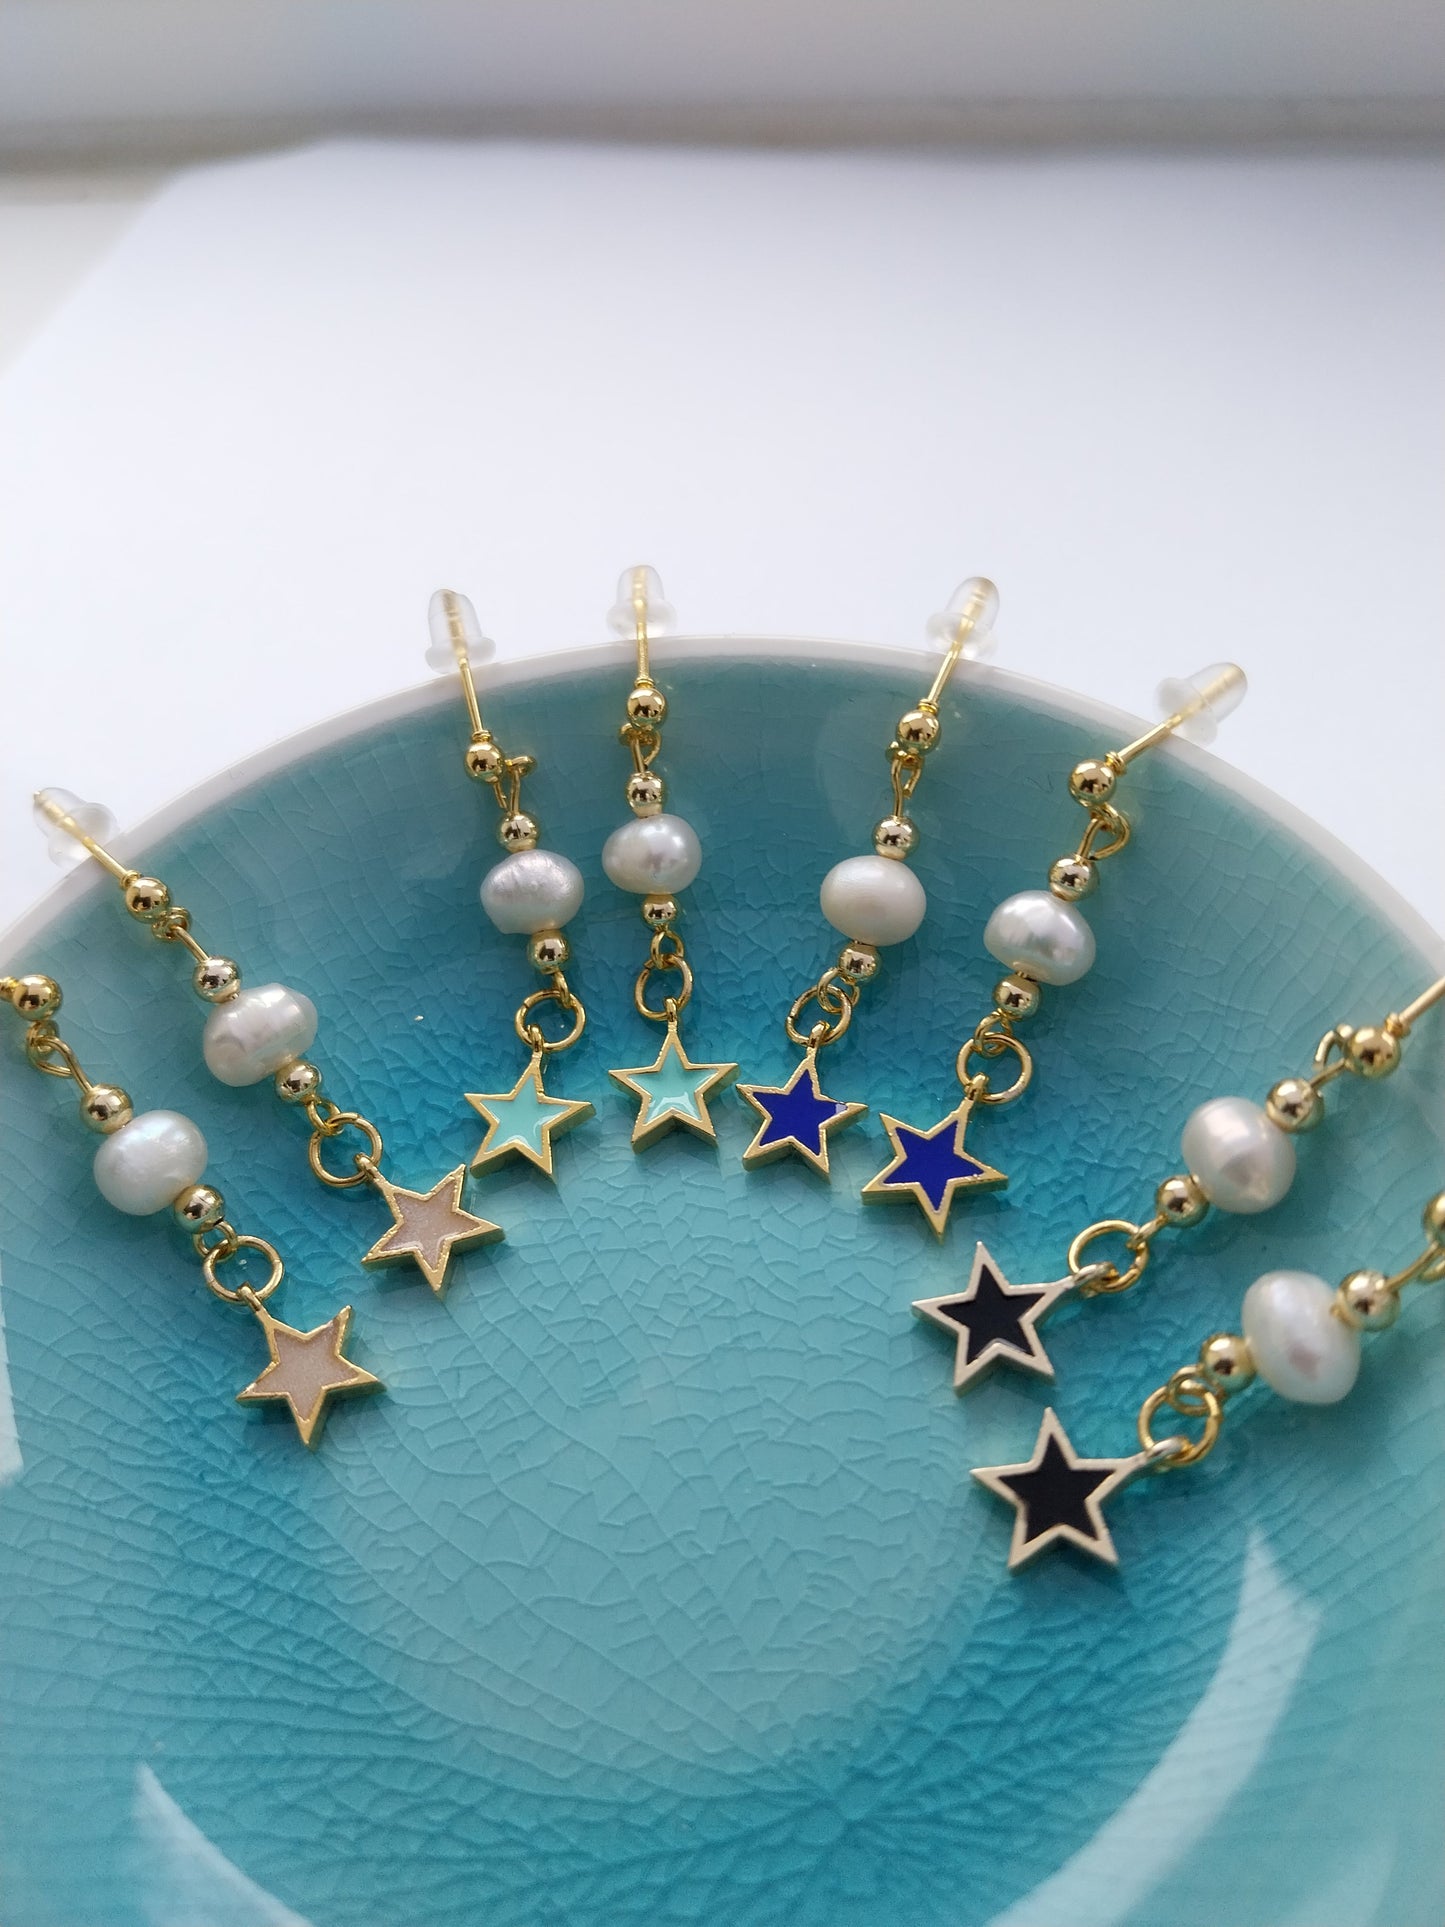 Celestial Earrings Navy Blue